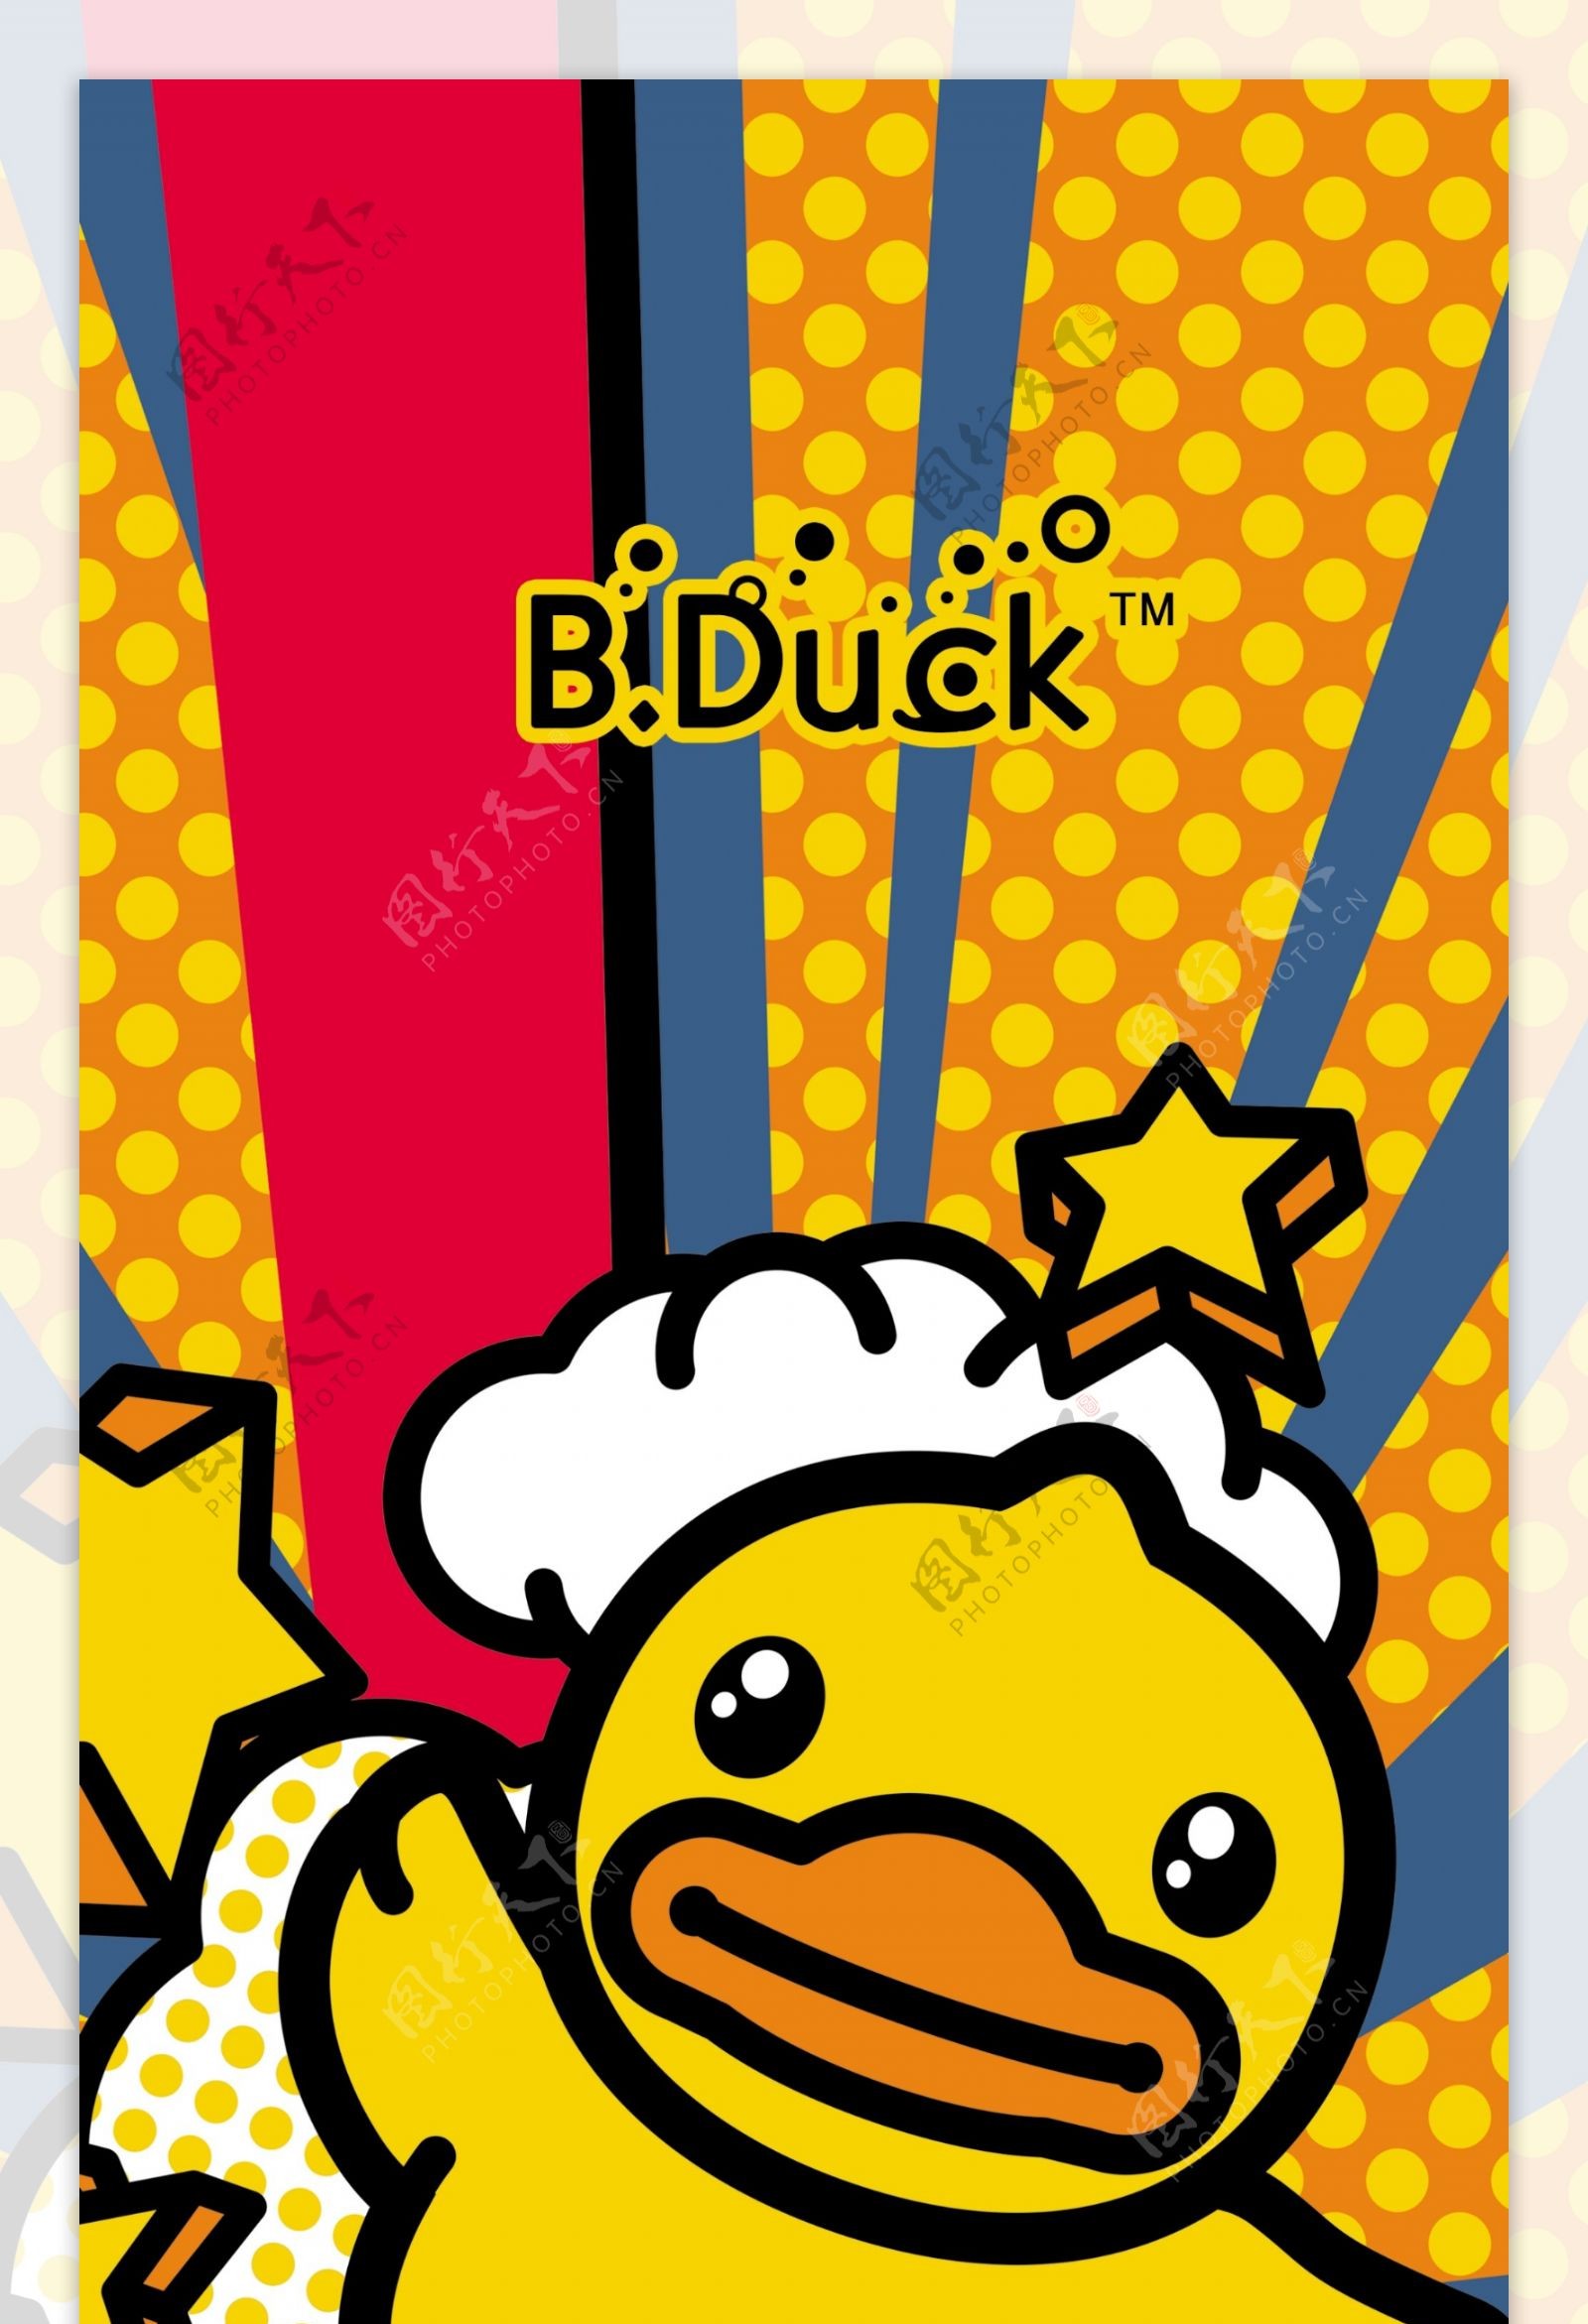 B.duck小黄鸭